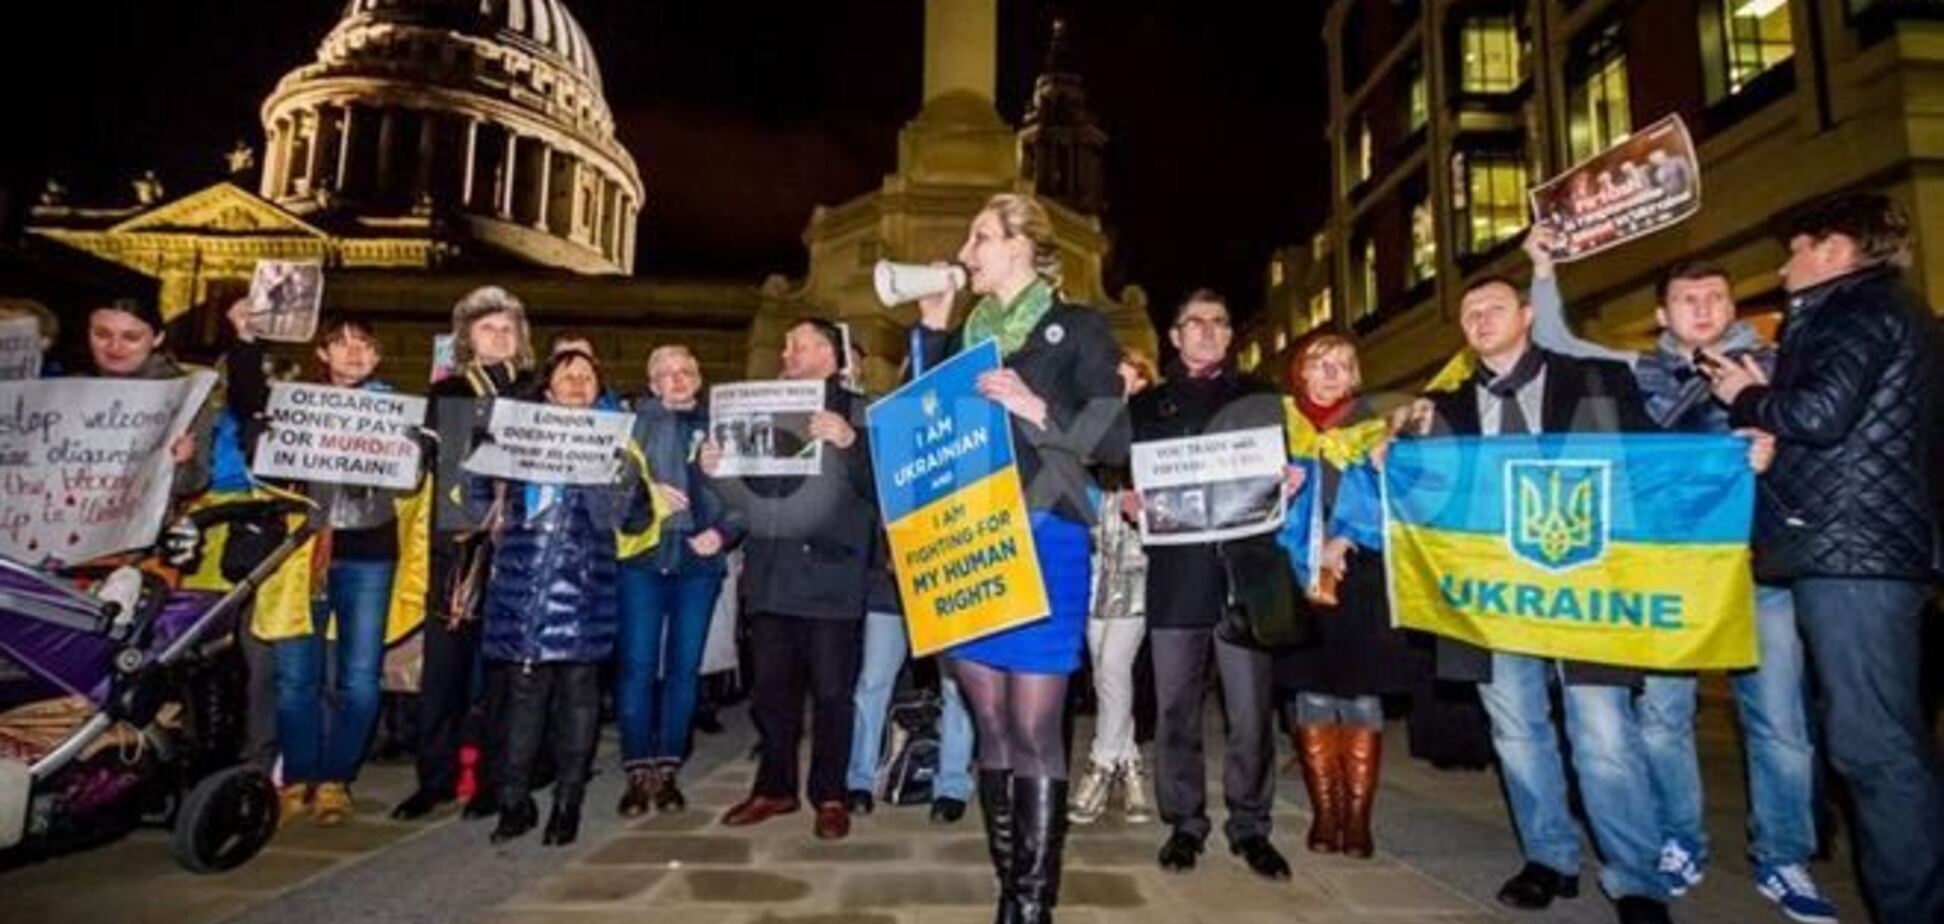 Посольство України в Лондоні оточене пікетувальниками, які кричать 'Ганьба!'